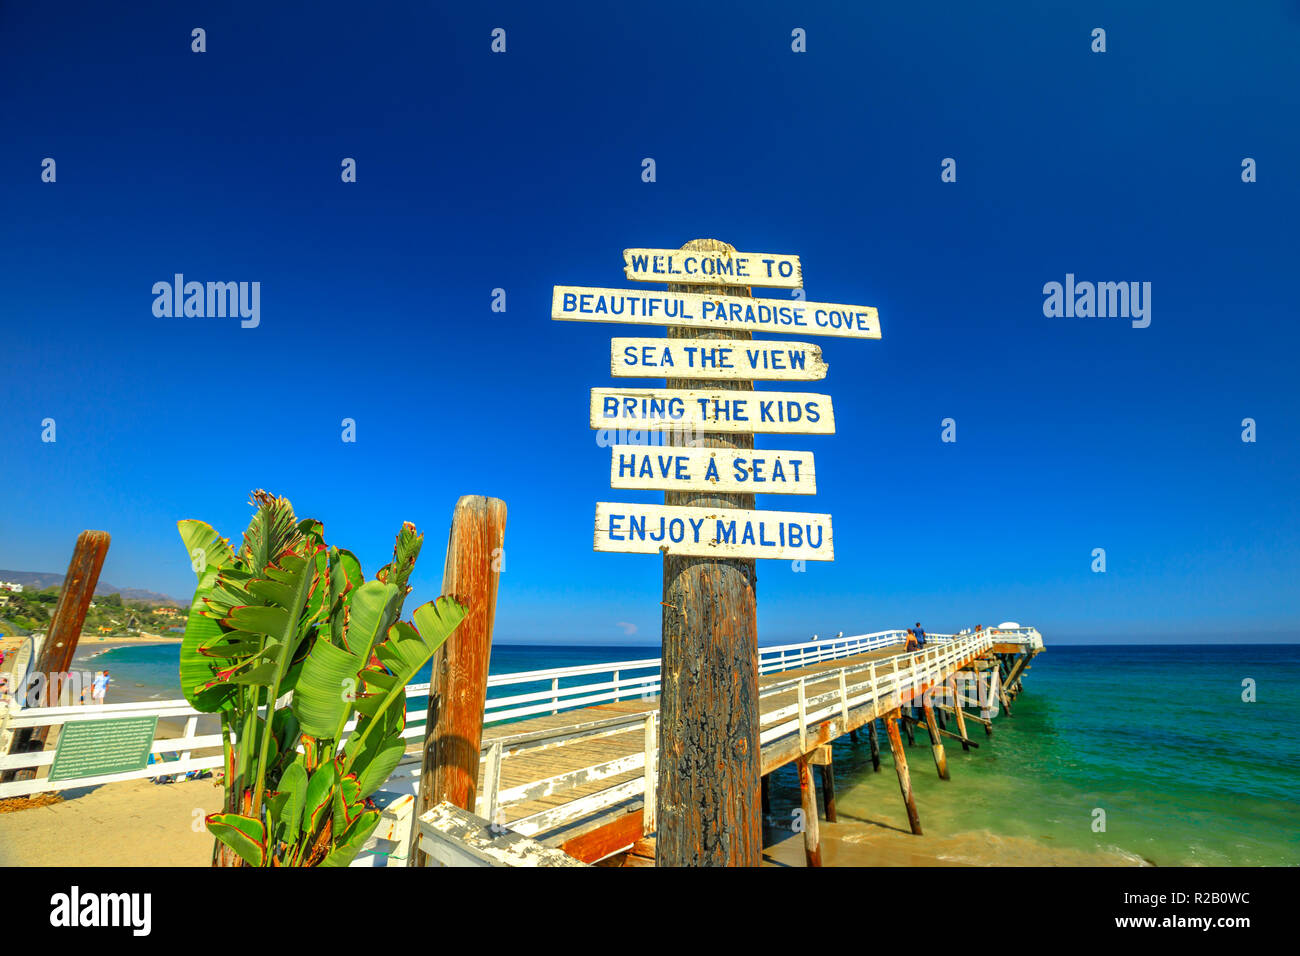 Malibu, Kalifornien, Vereinigte Staaten - 7. August 2018: Paradise Cove Pier unterzeichnen und Holzsteg in Paradise Cove Beach, Malibu. Summer Blue Sky, kopieren. Luxuriöse Reiseziel an der Pazifikküste. Stockfoto